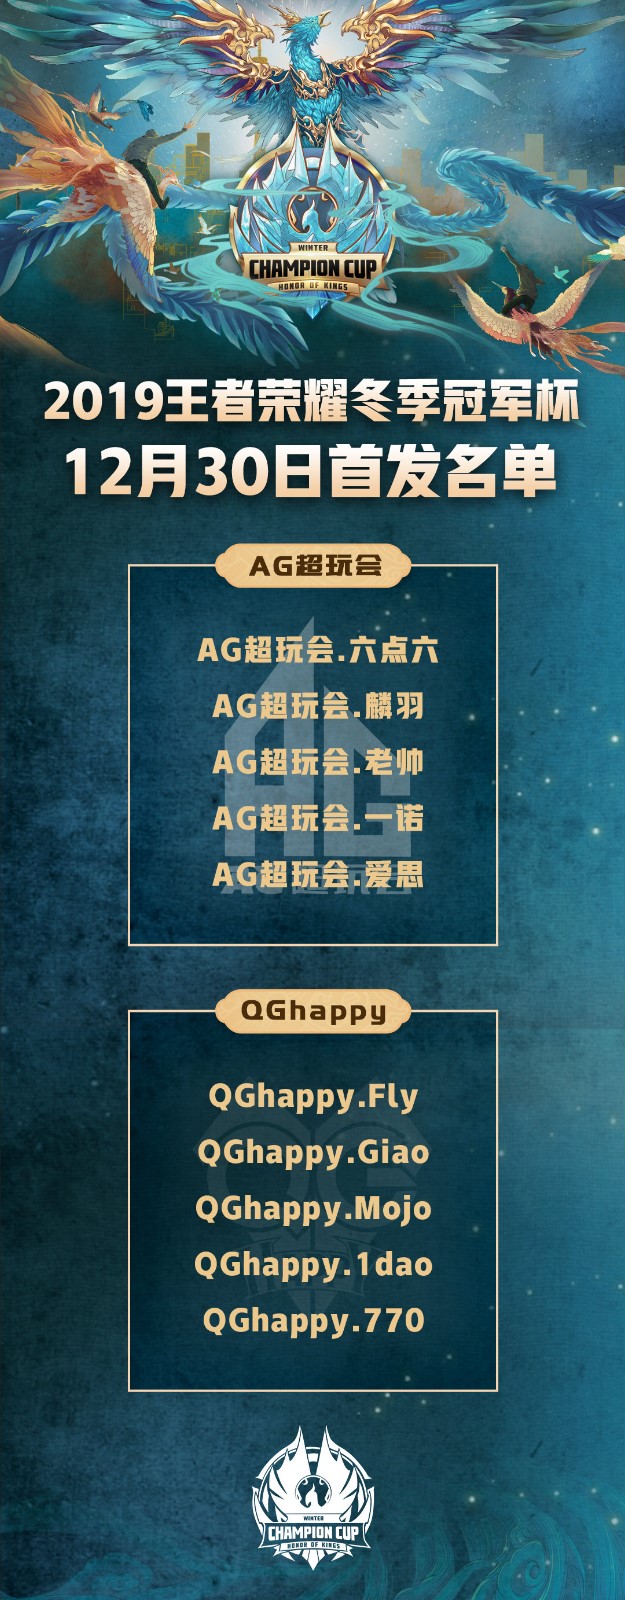 [战报] QGhappy4:2AG超玩会 与eStarPro会师总决赛